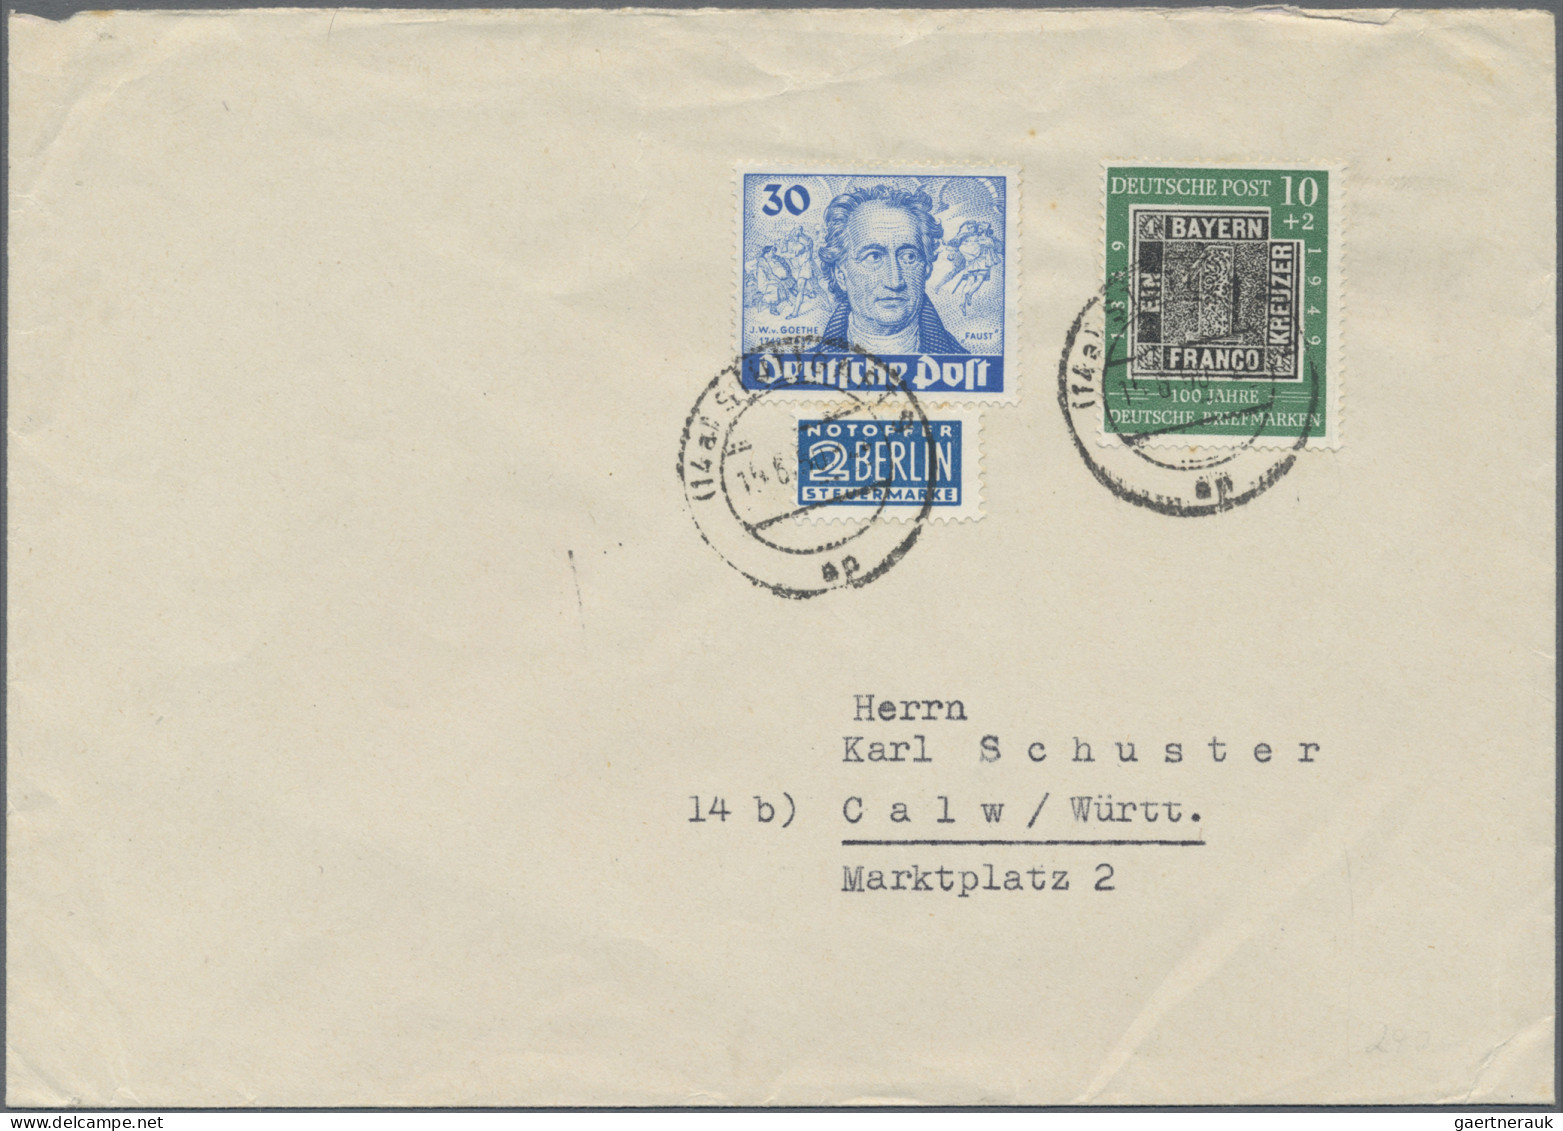 Berlin: 1948/1953 (ca.), Fundus von ca. 300 Belegen mit vielen attraktiven Stück